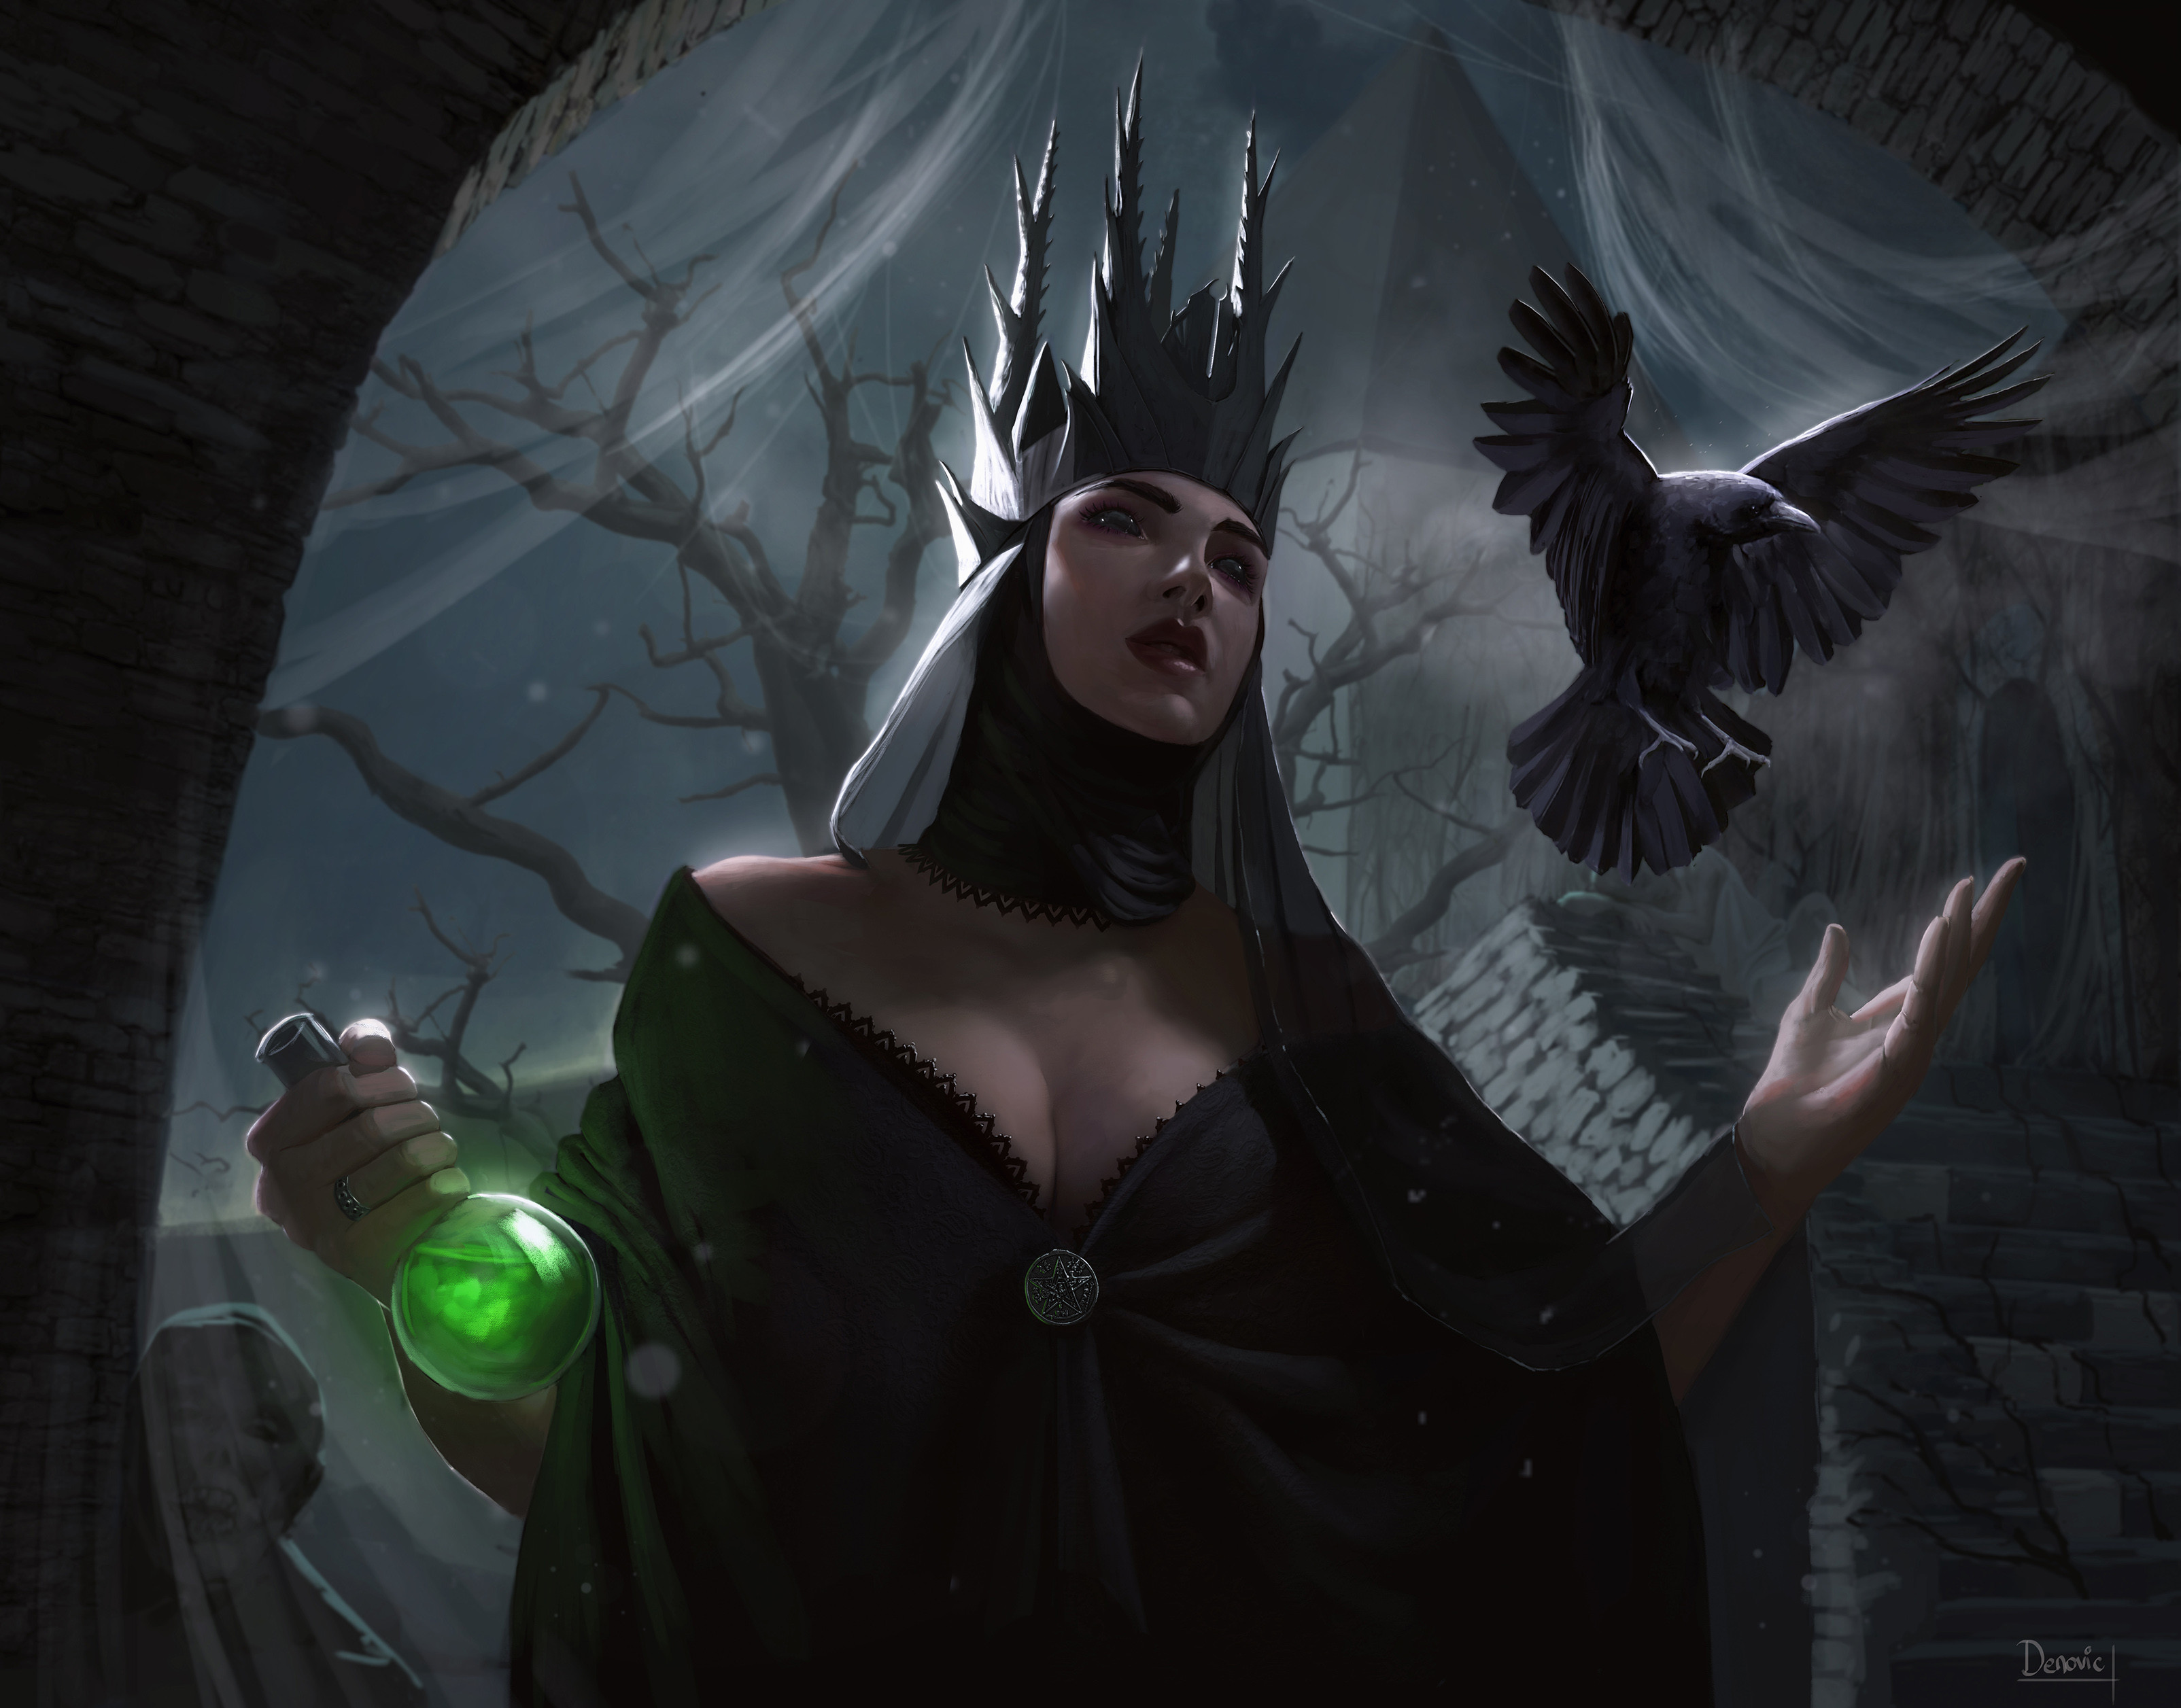 Black queen raven